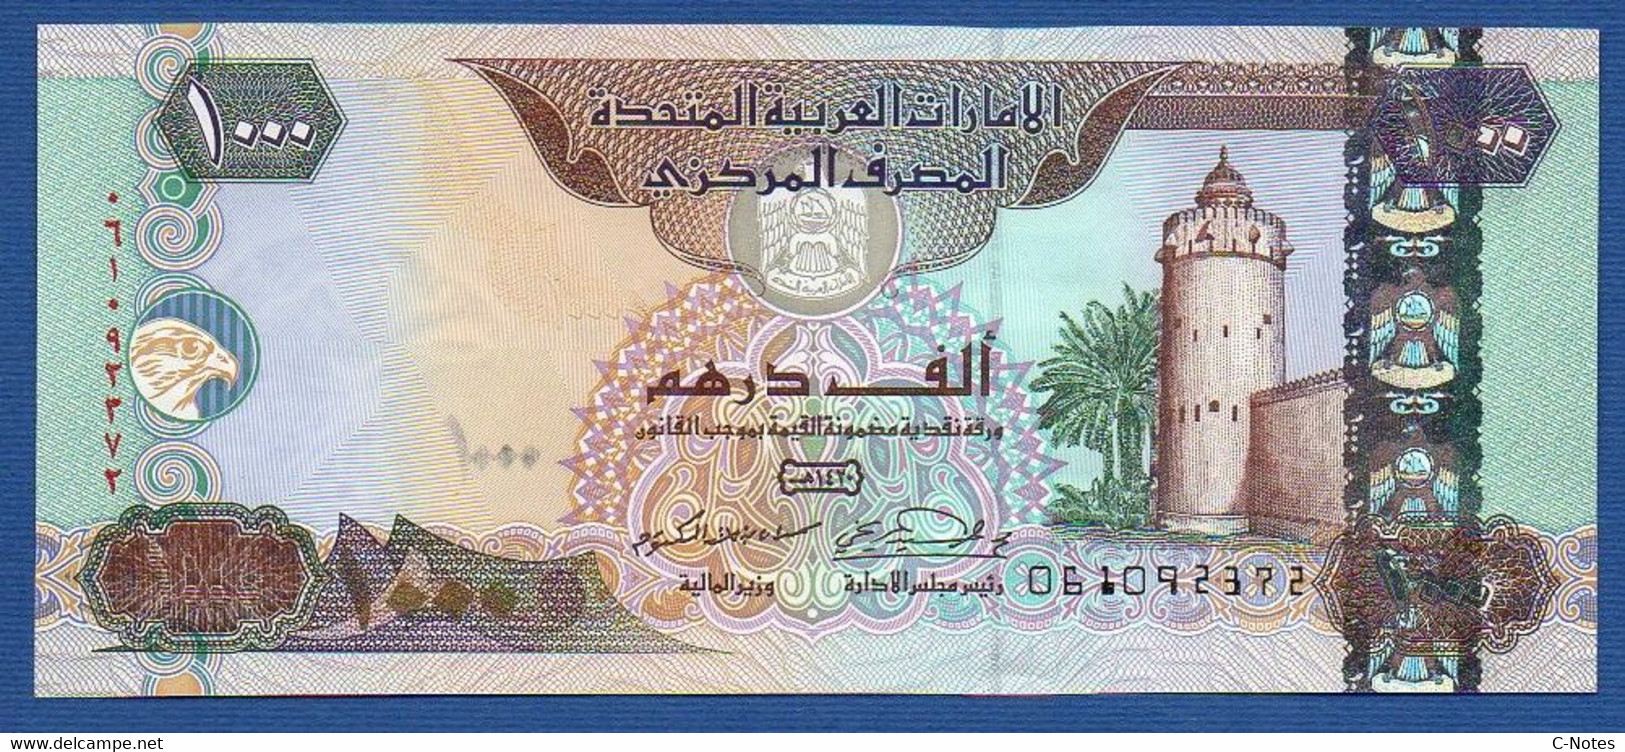 UNITED ARAB EMIRATES - P.25b – 1000 DIRHAMS 2000 UNC Serie 061092372 - Emirati Arabi Uniti